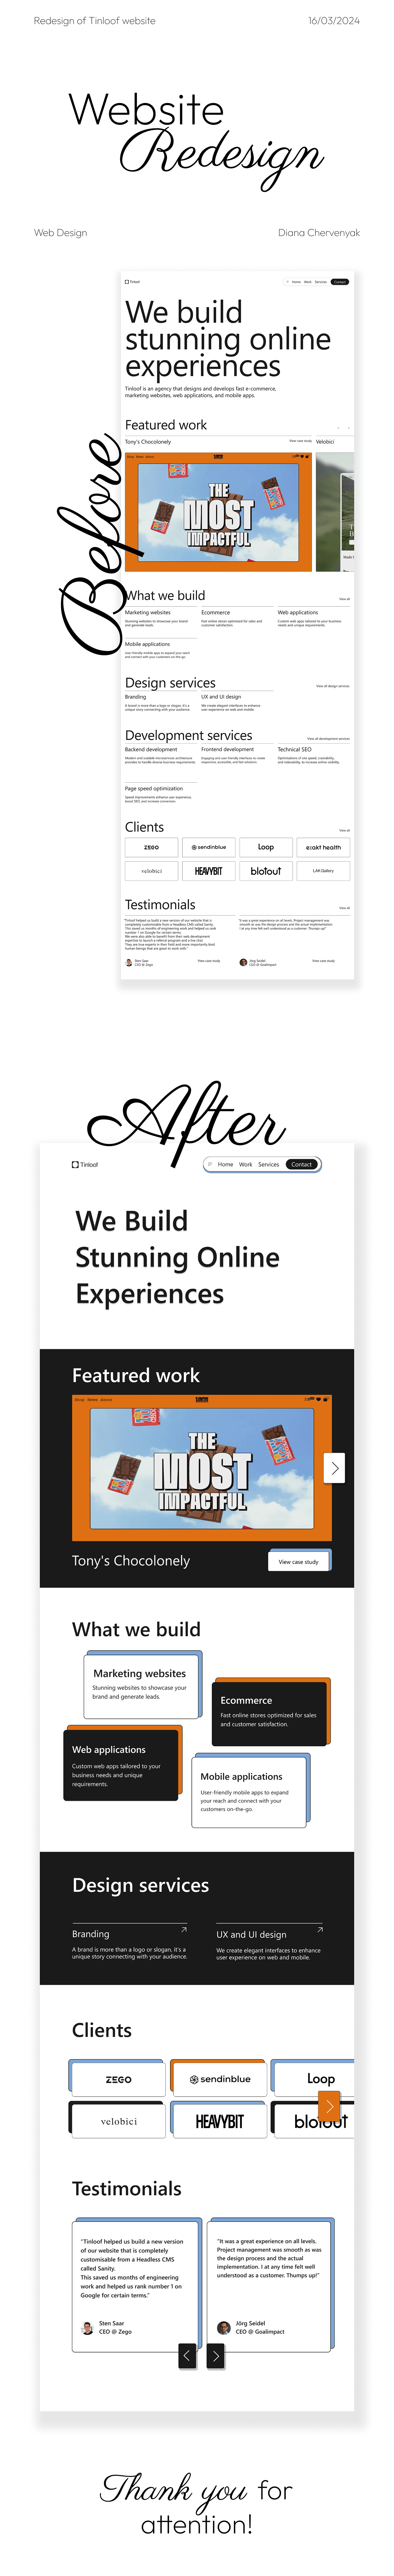 redesign redesign website Web Design  Website Figma UI/UX ui design Web site design